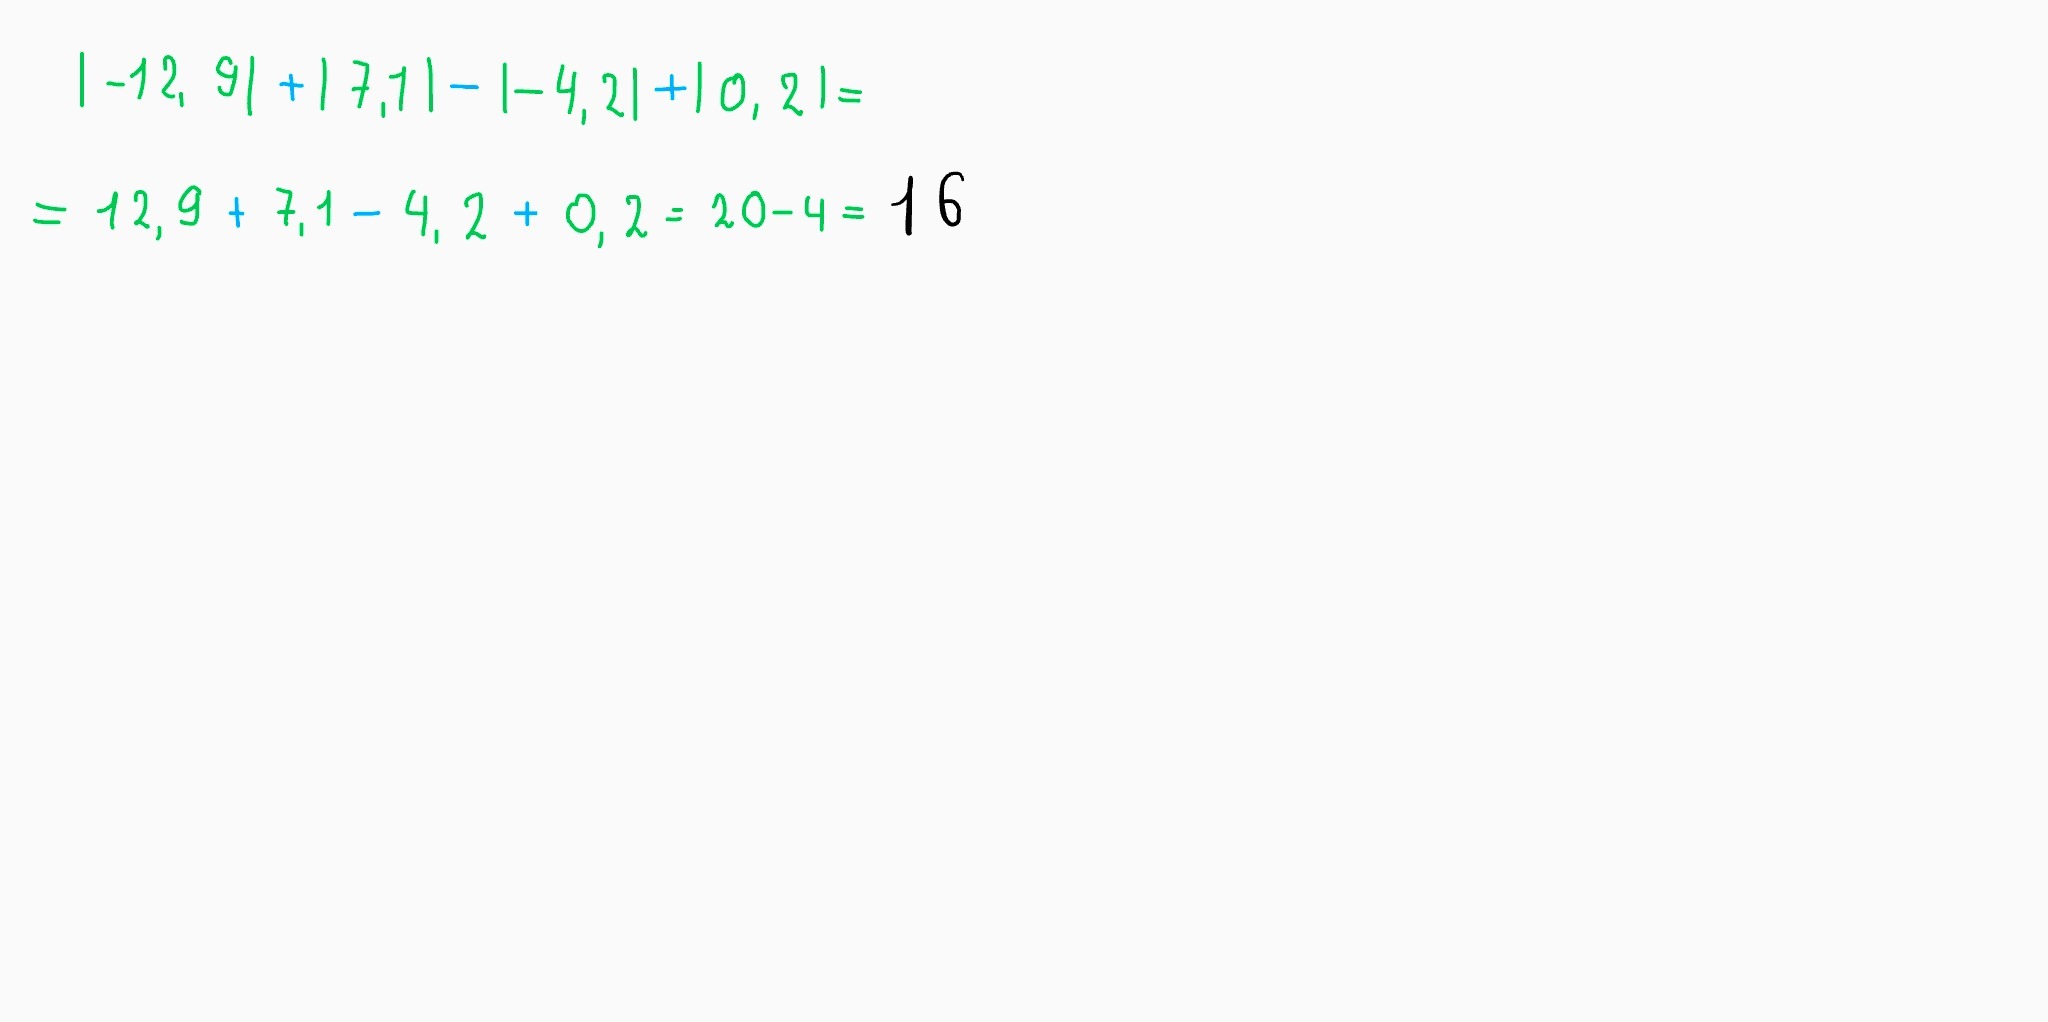 Вычисли |12,9| + |7,1|. Вычислите 12 1/4- 7 1/3+1 1/6. Вычисли |-12,9| + |7,1|- |-4,2| + |0,2|. Вычислить12 1/3•11/2•33/4•41/5. Вычислить 12 мм